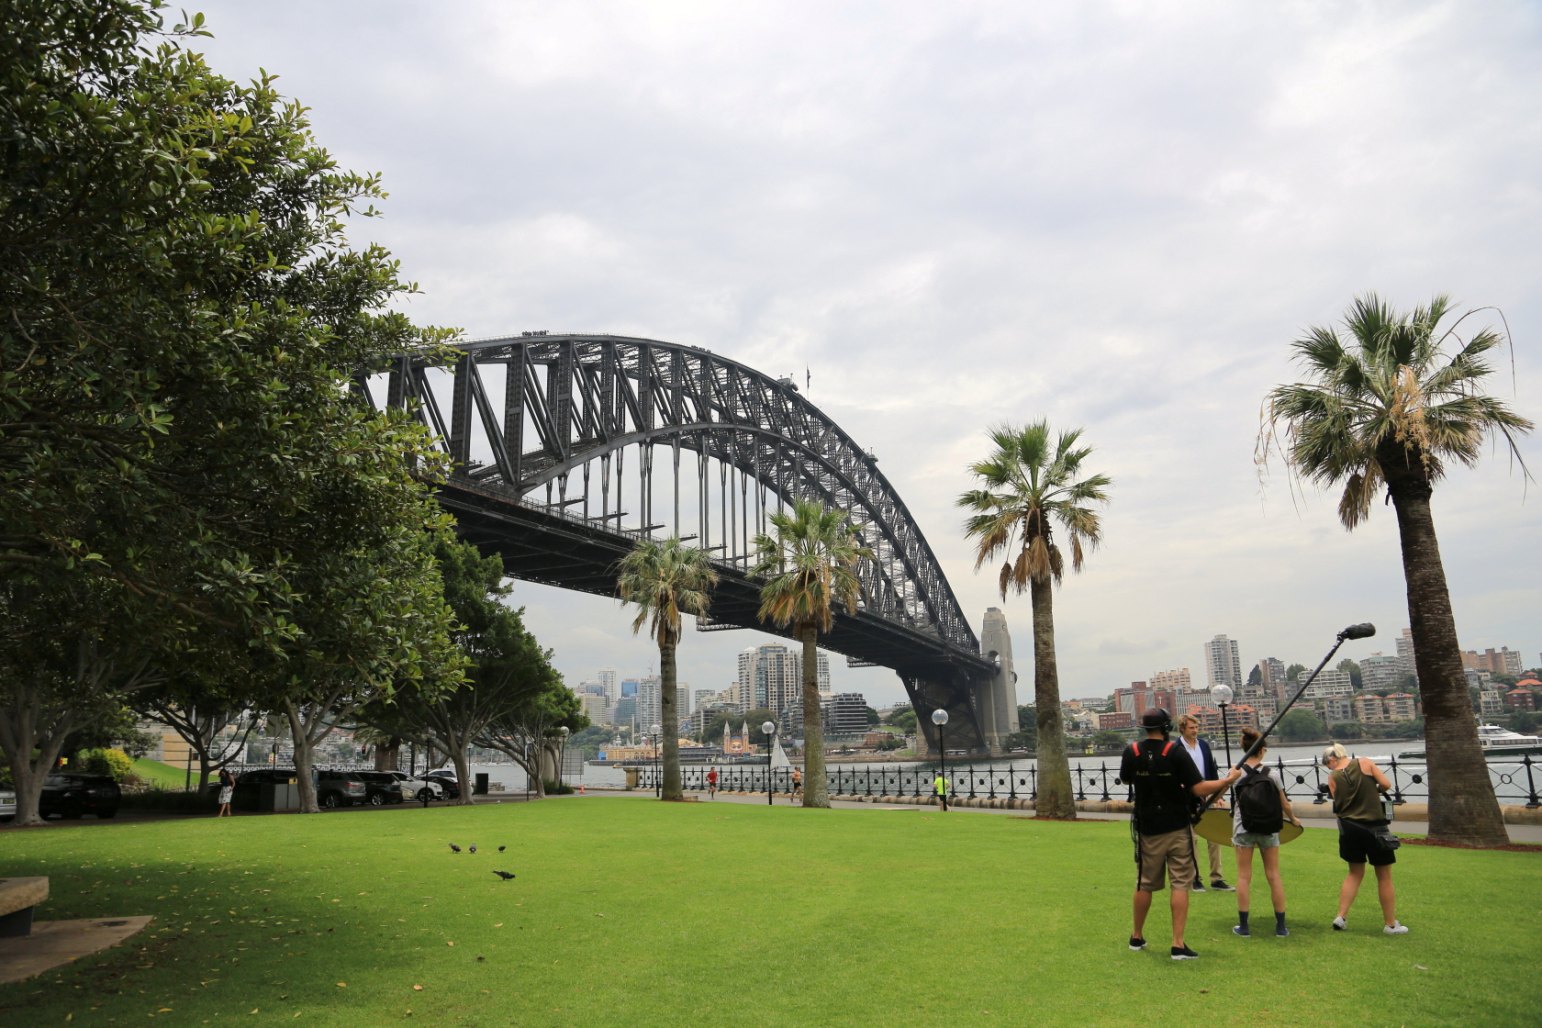 壁纸 : 澳大利亚, 悉尼海港大桥, 建筑物, 棕榈树, 海岸 1680x1050 - goodfon - 654599 - 电脑桌面壁纸 ...